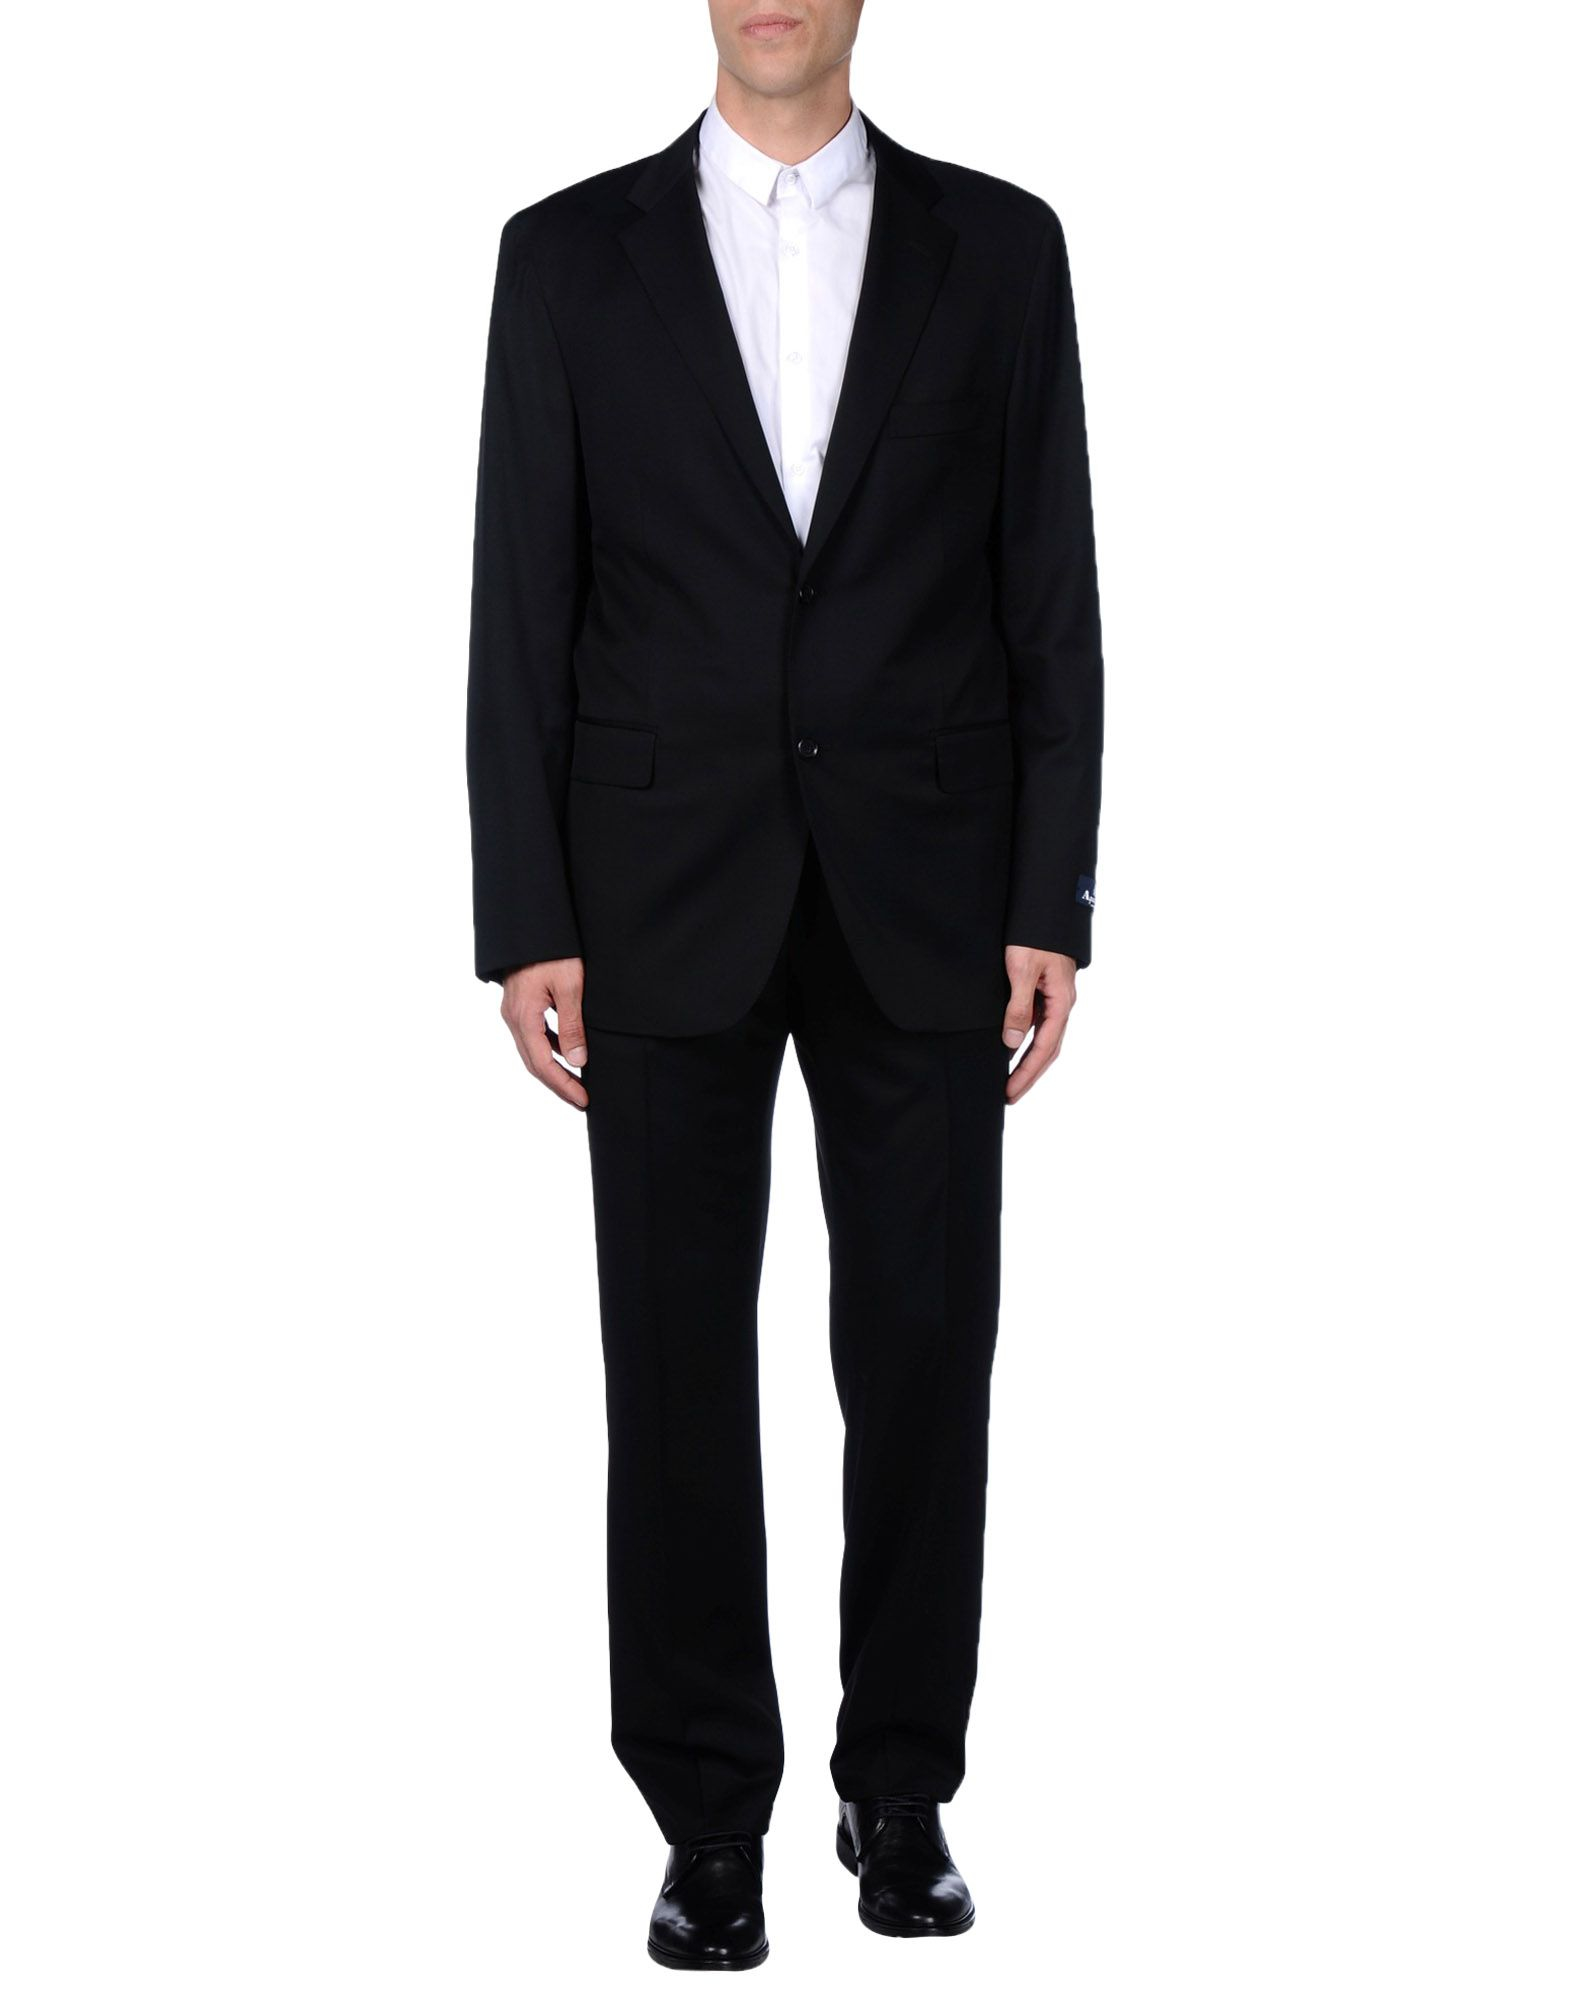 Lyst - Aquascutum Suit in Black for Men